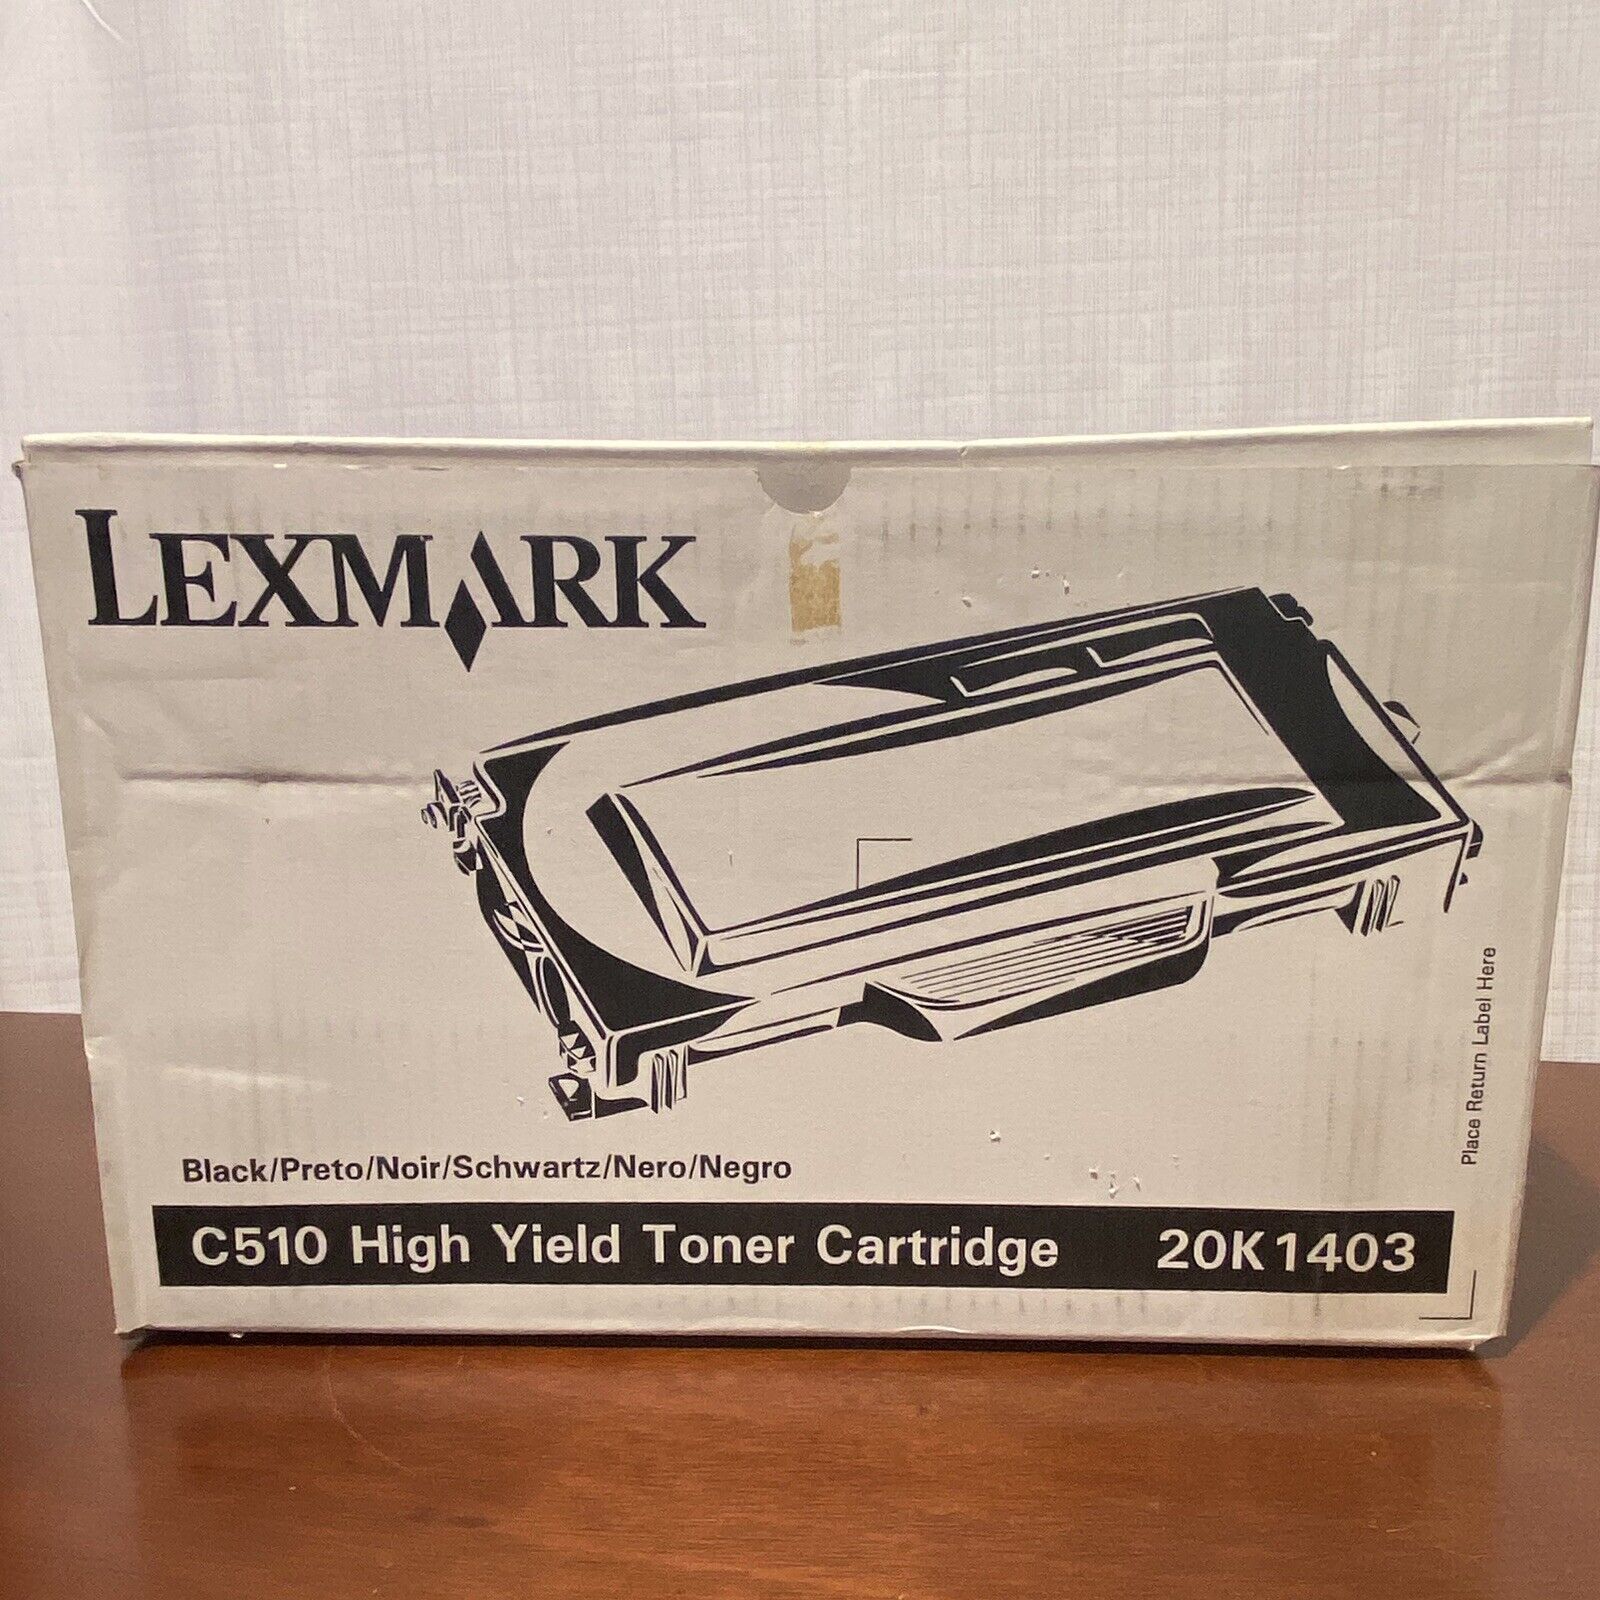 Genuine Lexmark 20K1403 Black Ink Toner Cartridge For C510 - New in Box